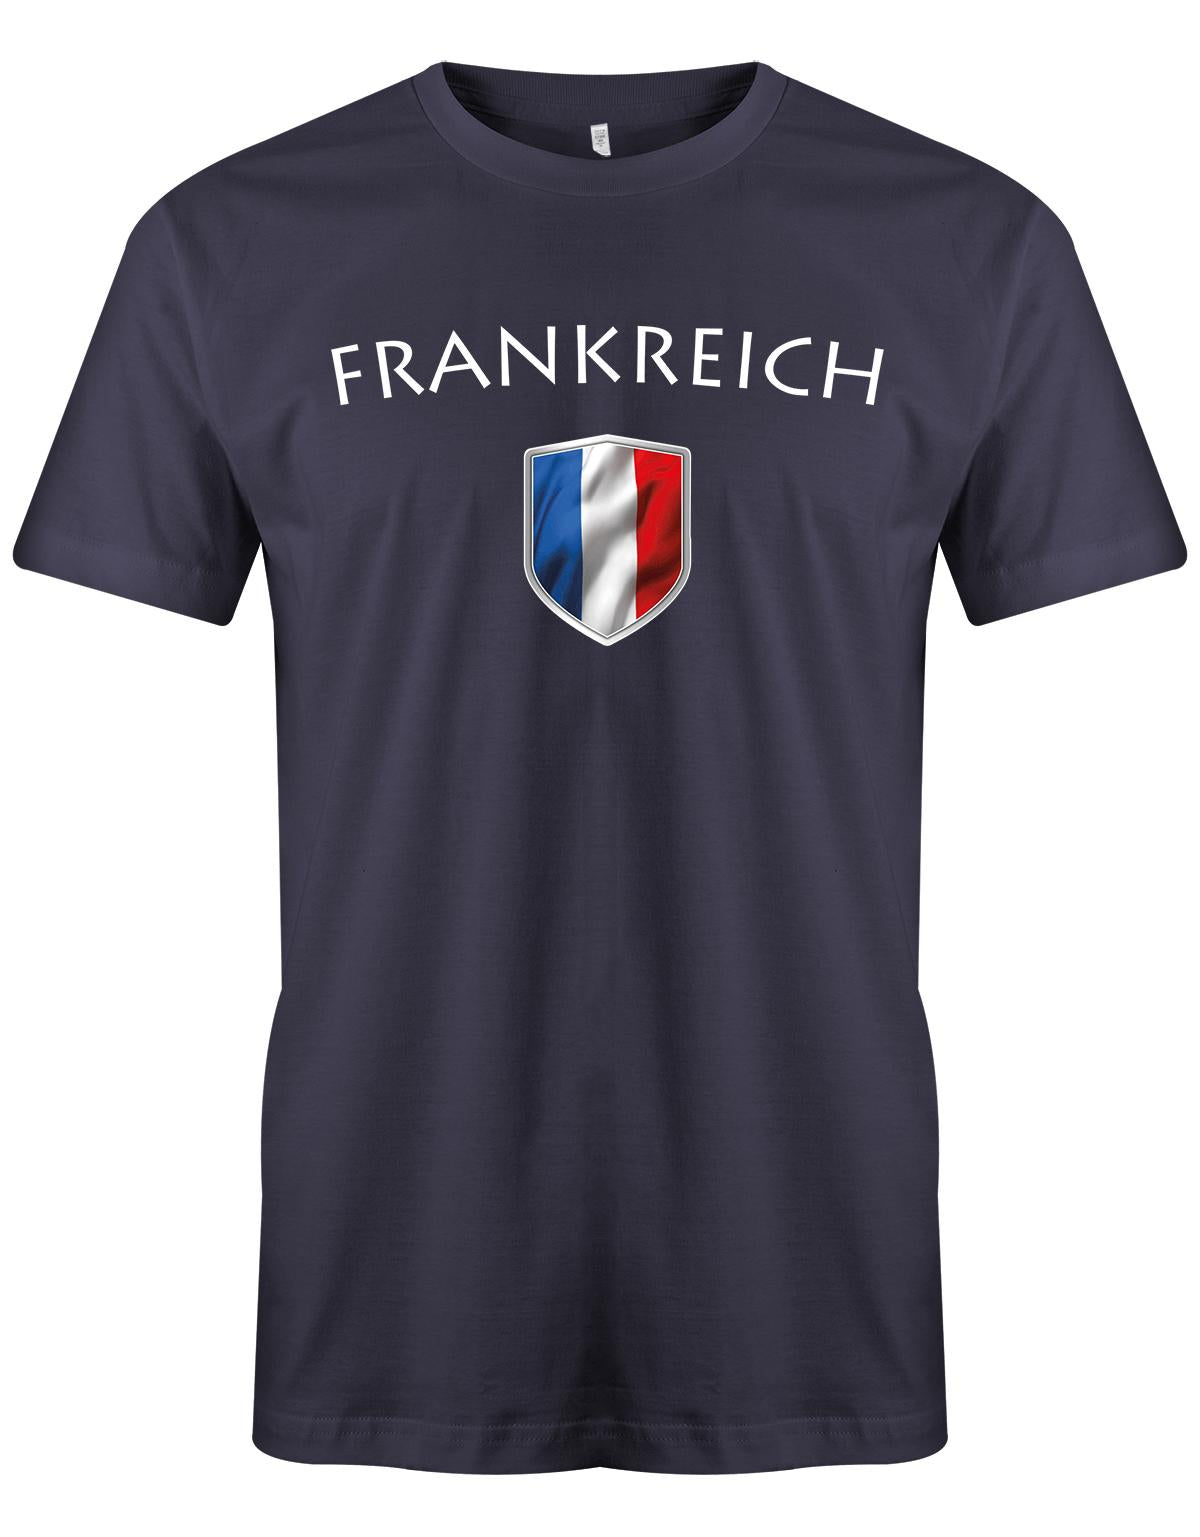 Frankreich-Herren-Shirt-Navy